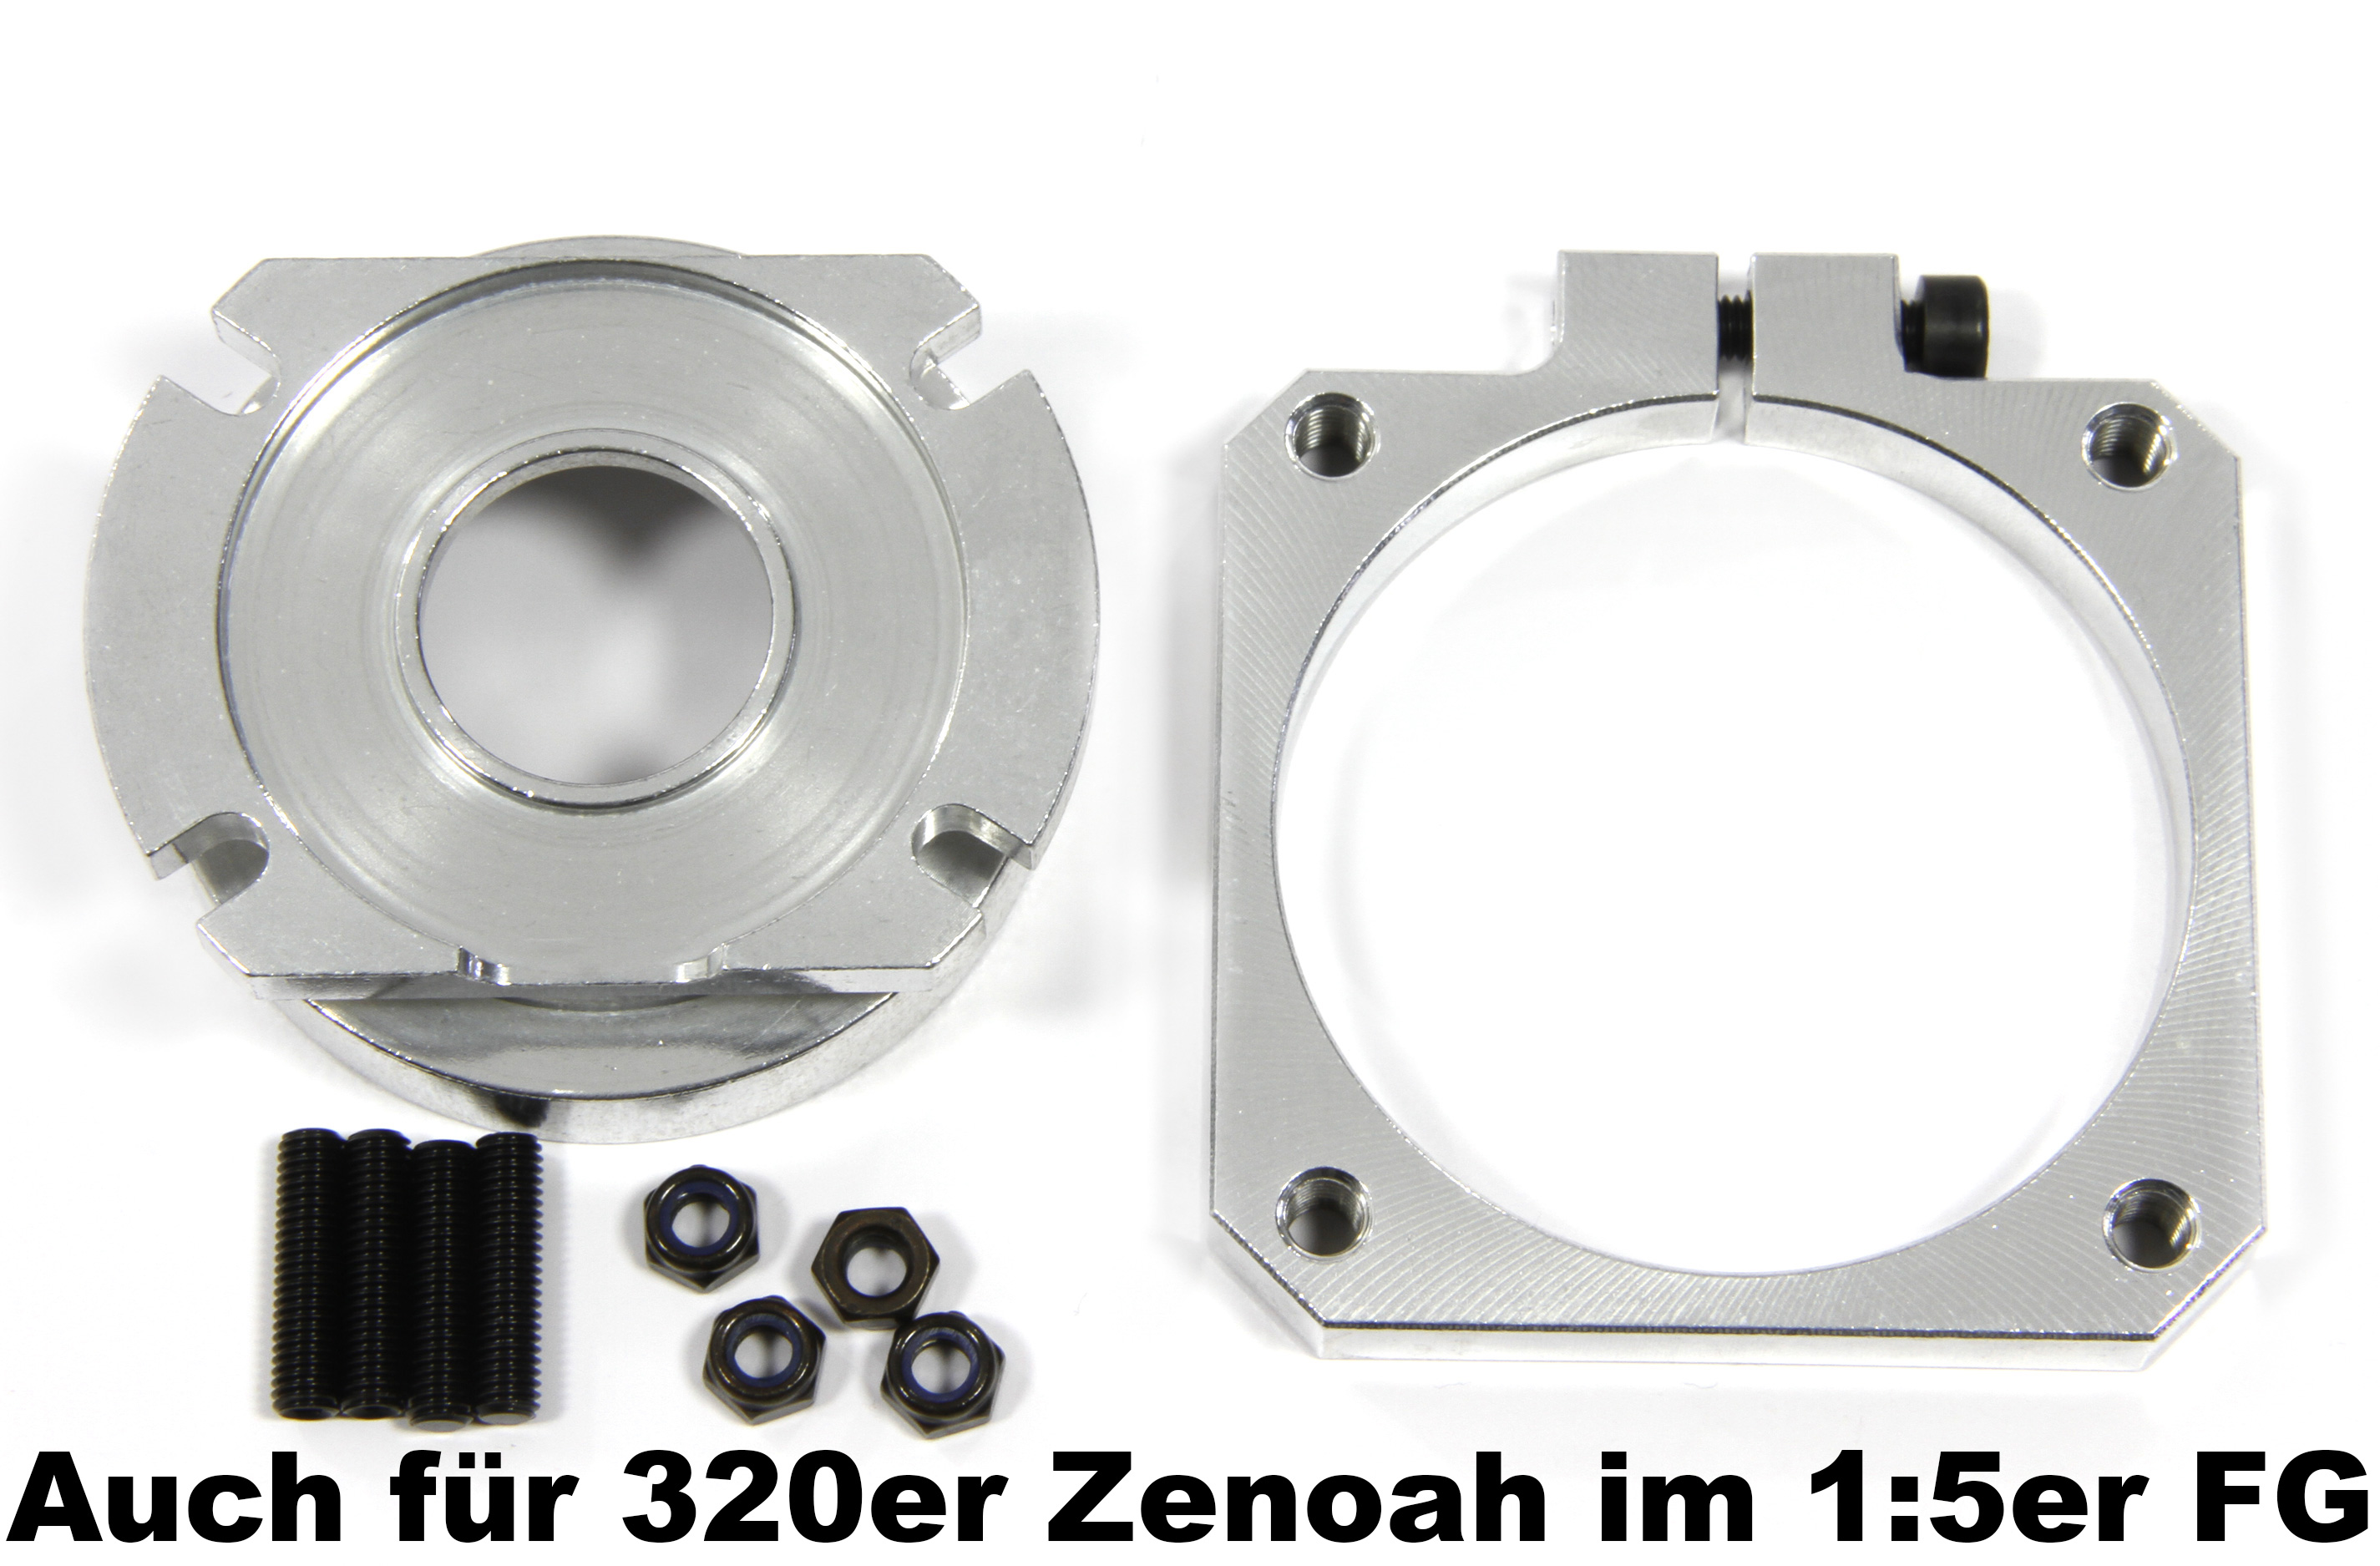 y1421 Motor-Schnellbefestigung für G320er Zenoah in FG 1:5er